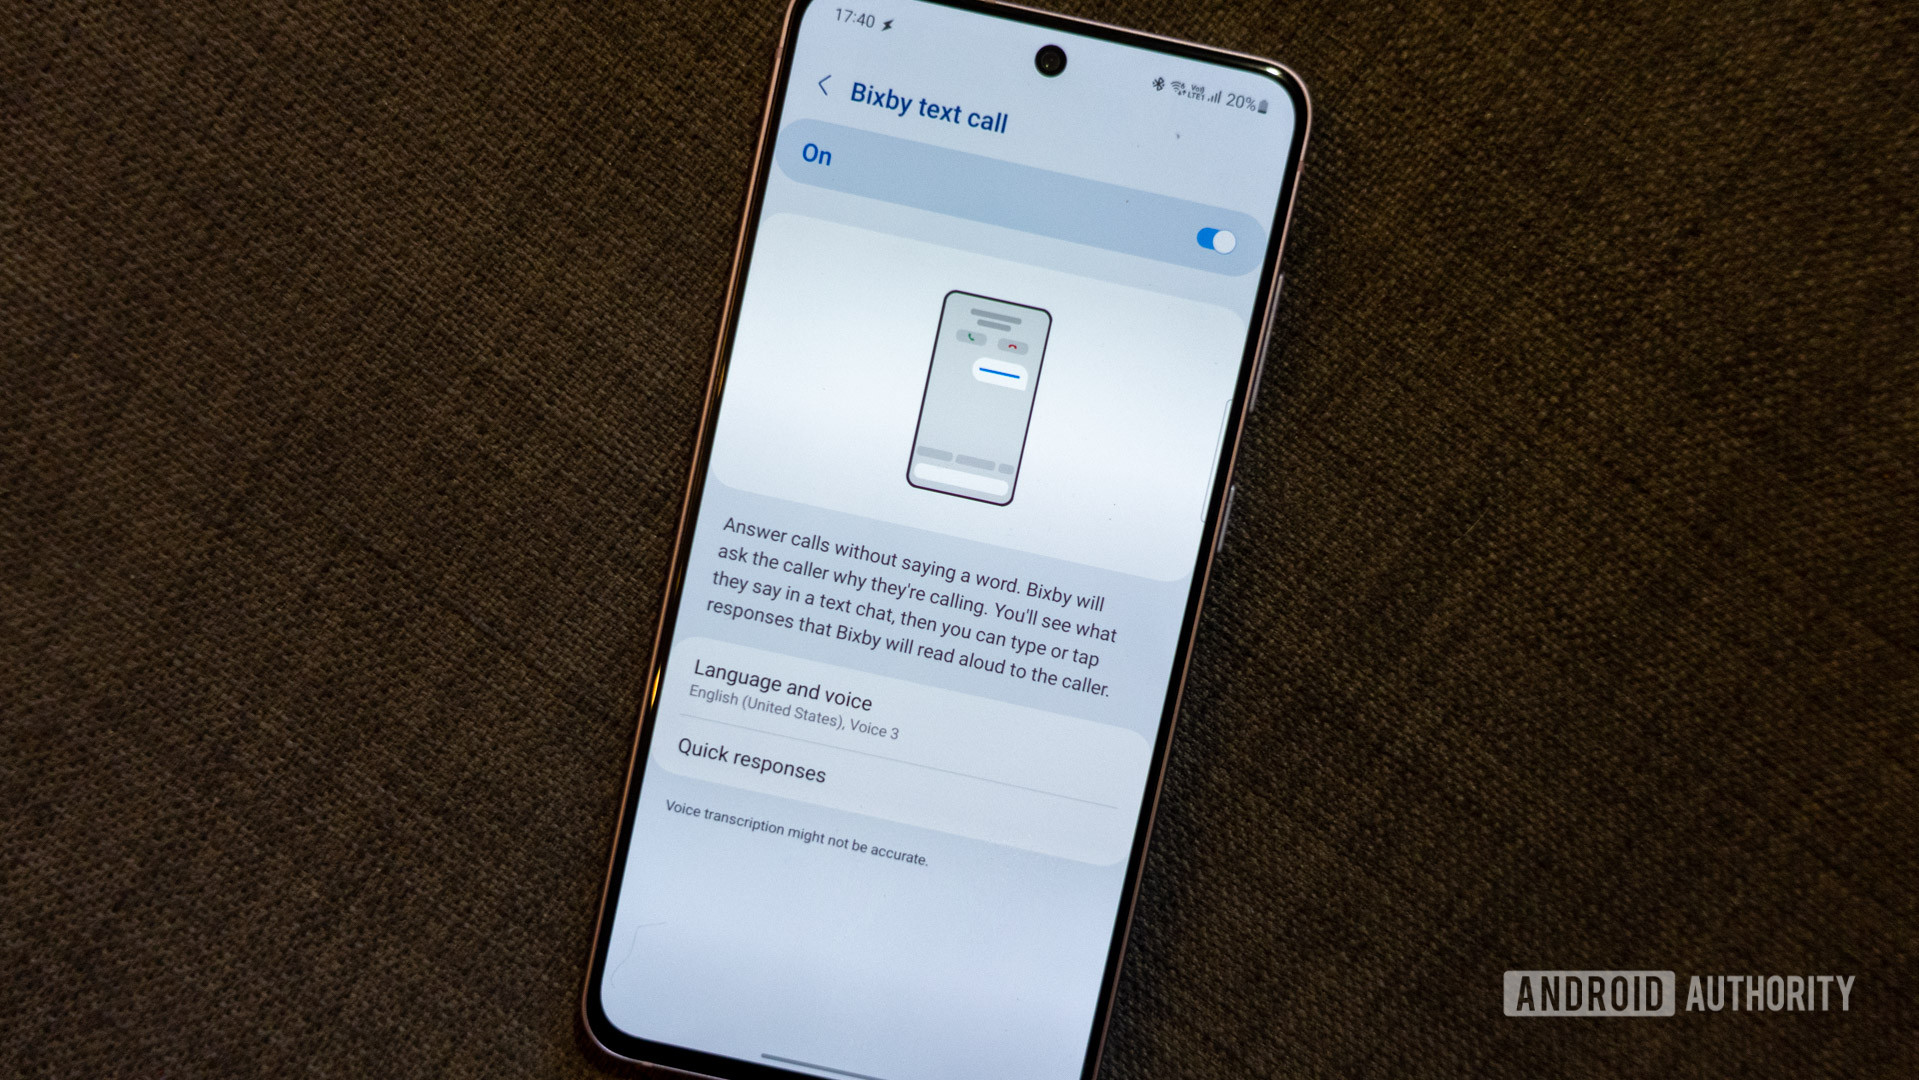 bixby text call settings menu